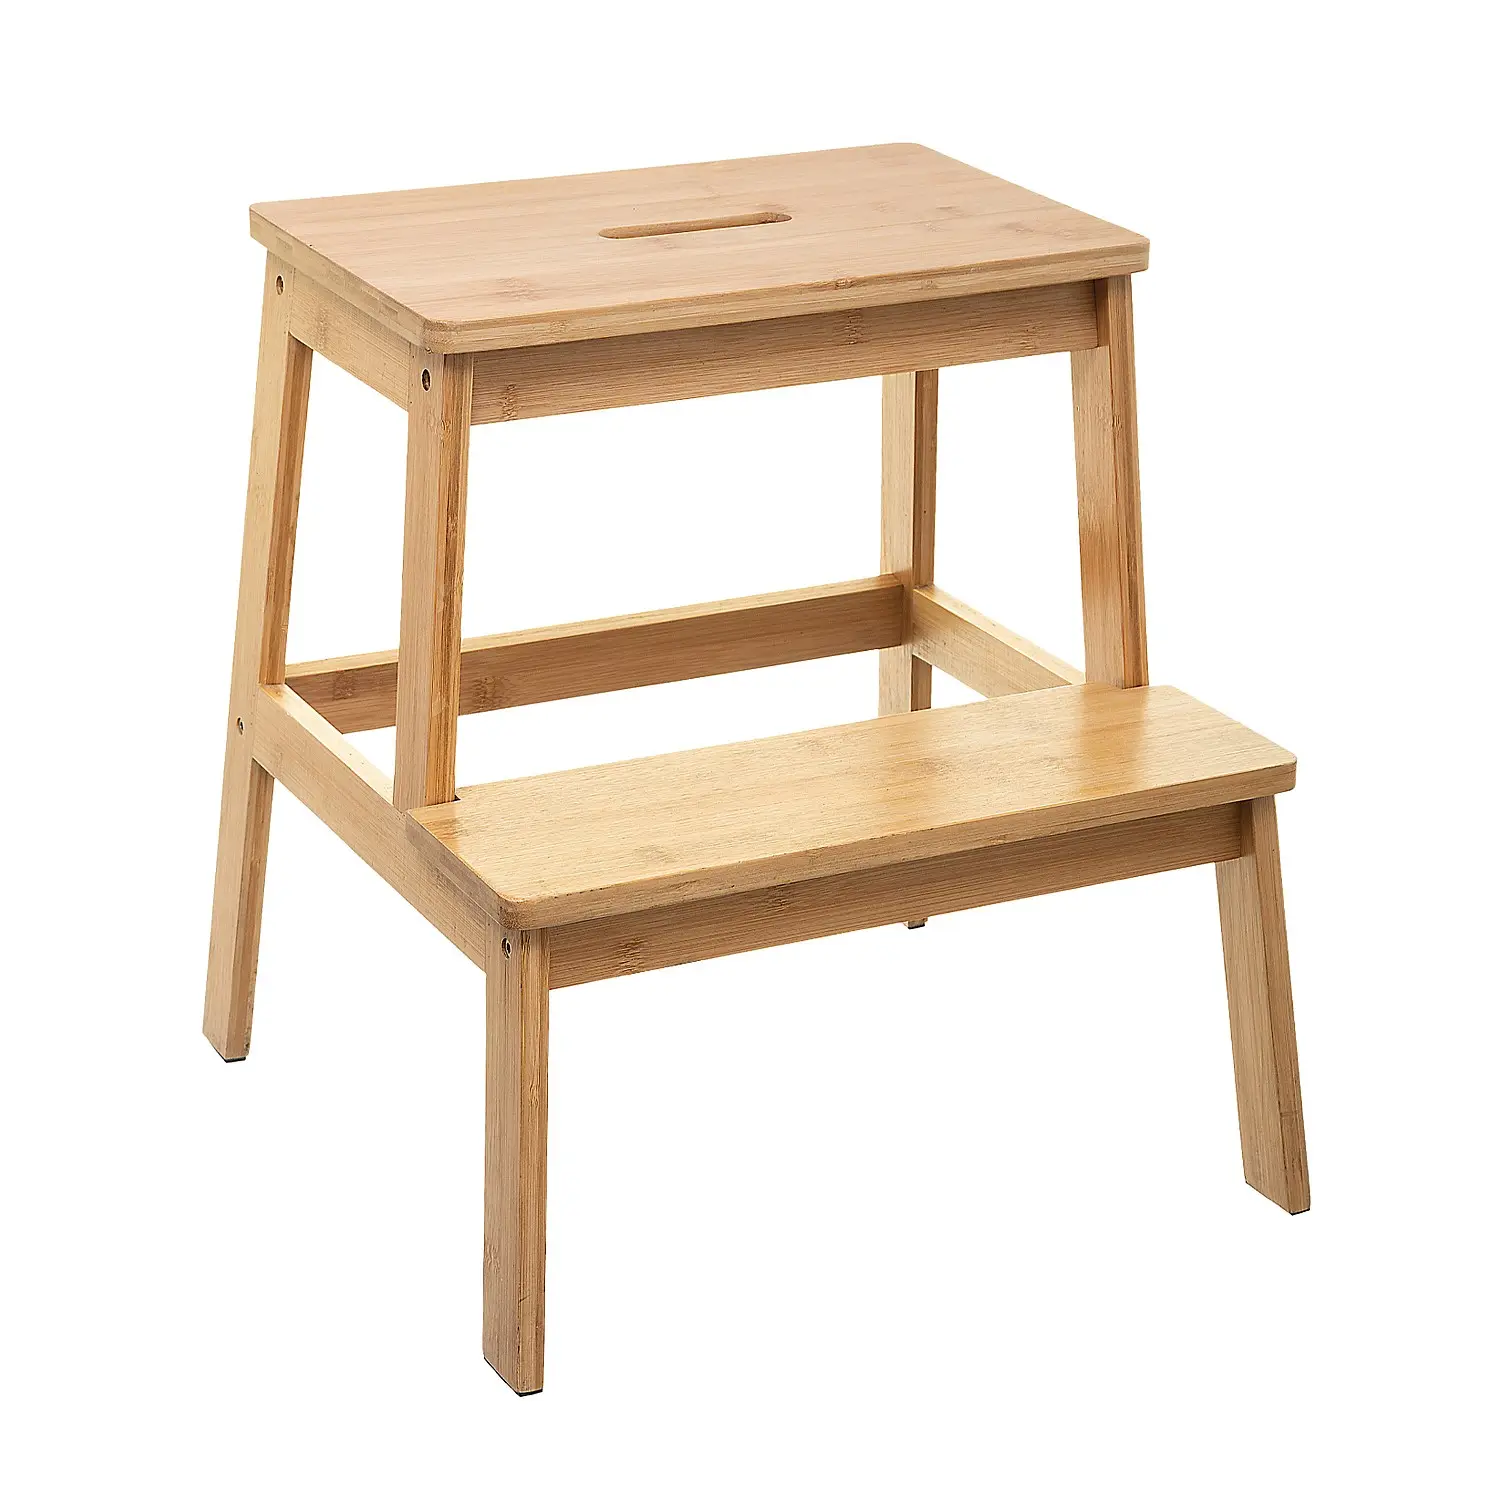 Ducha taburete banco con estante de bambú Spa baño decoración asiento de madera banco